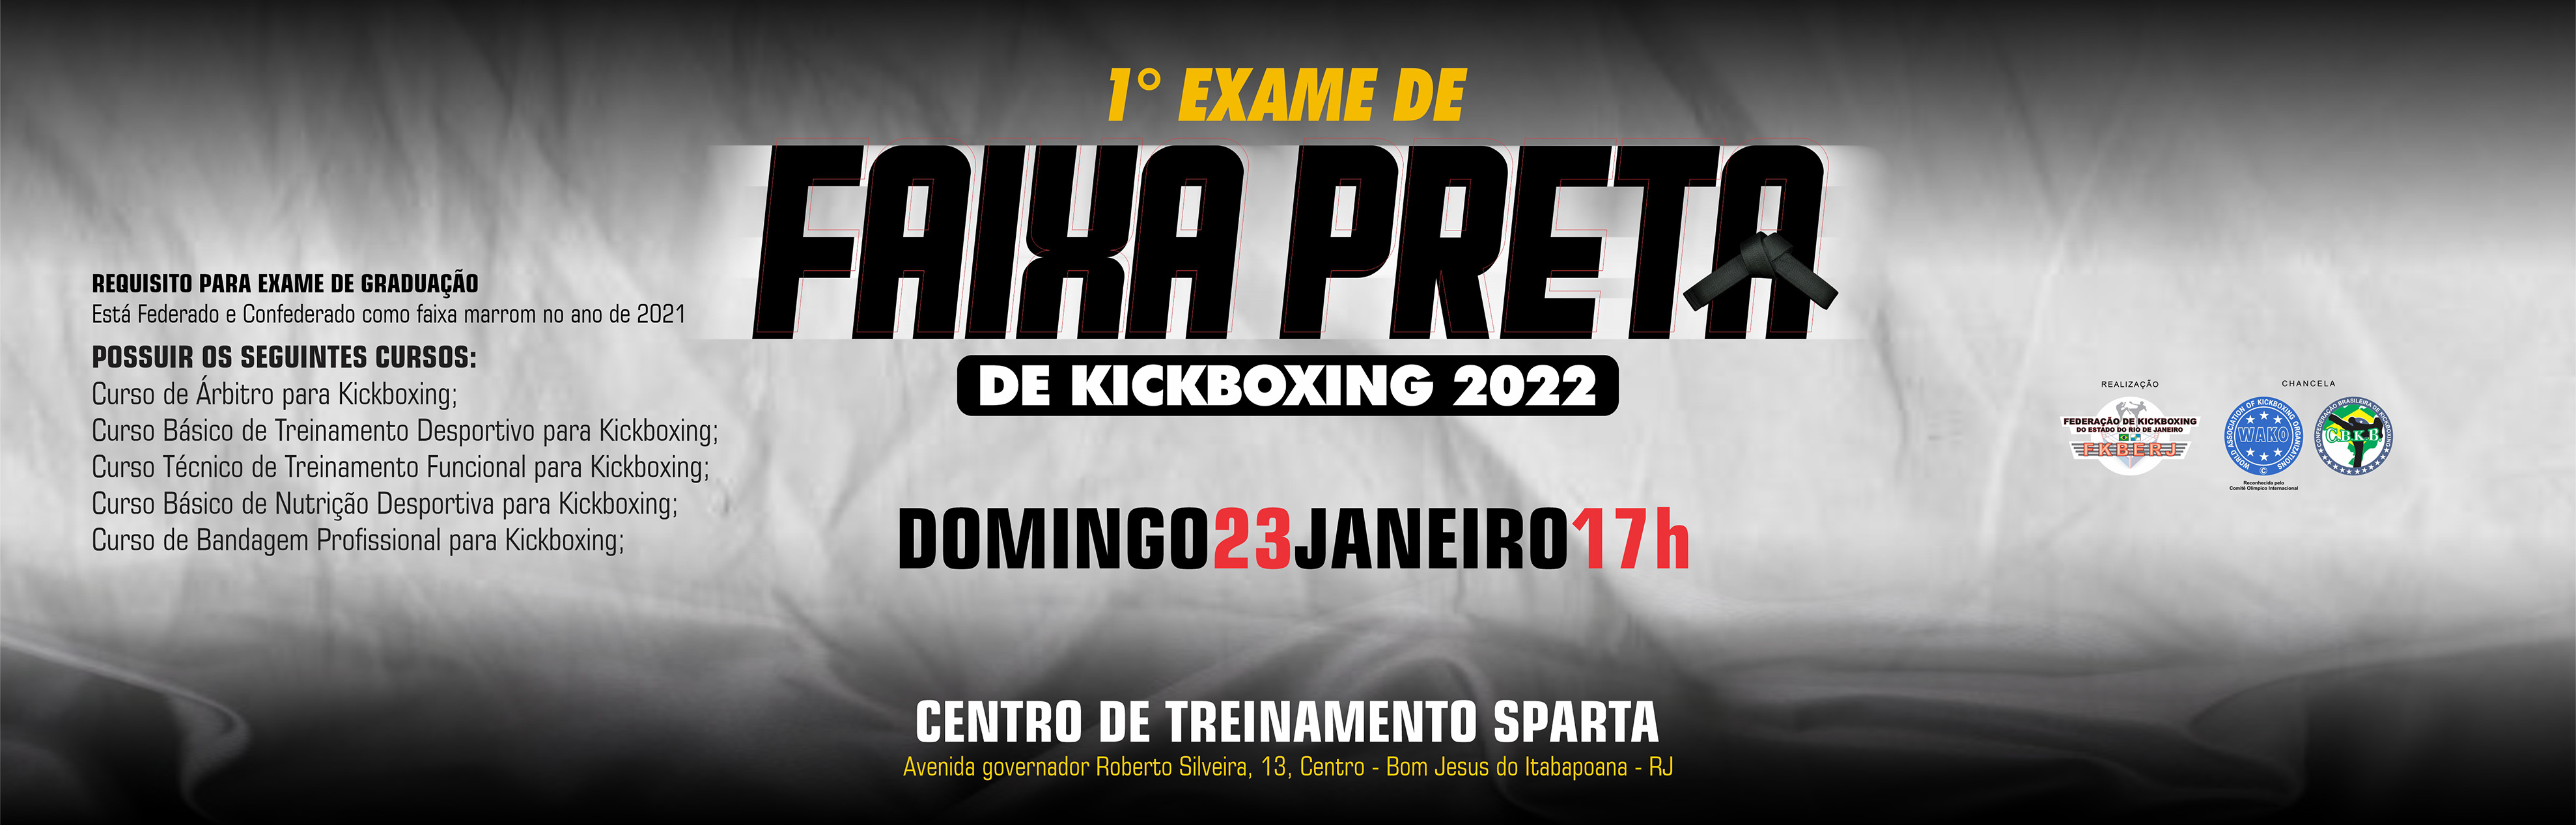 1º Exame de Faixa Preta de Kickboxing 2022